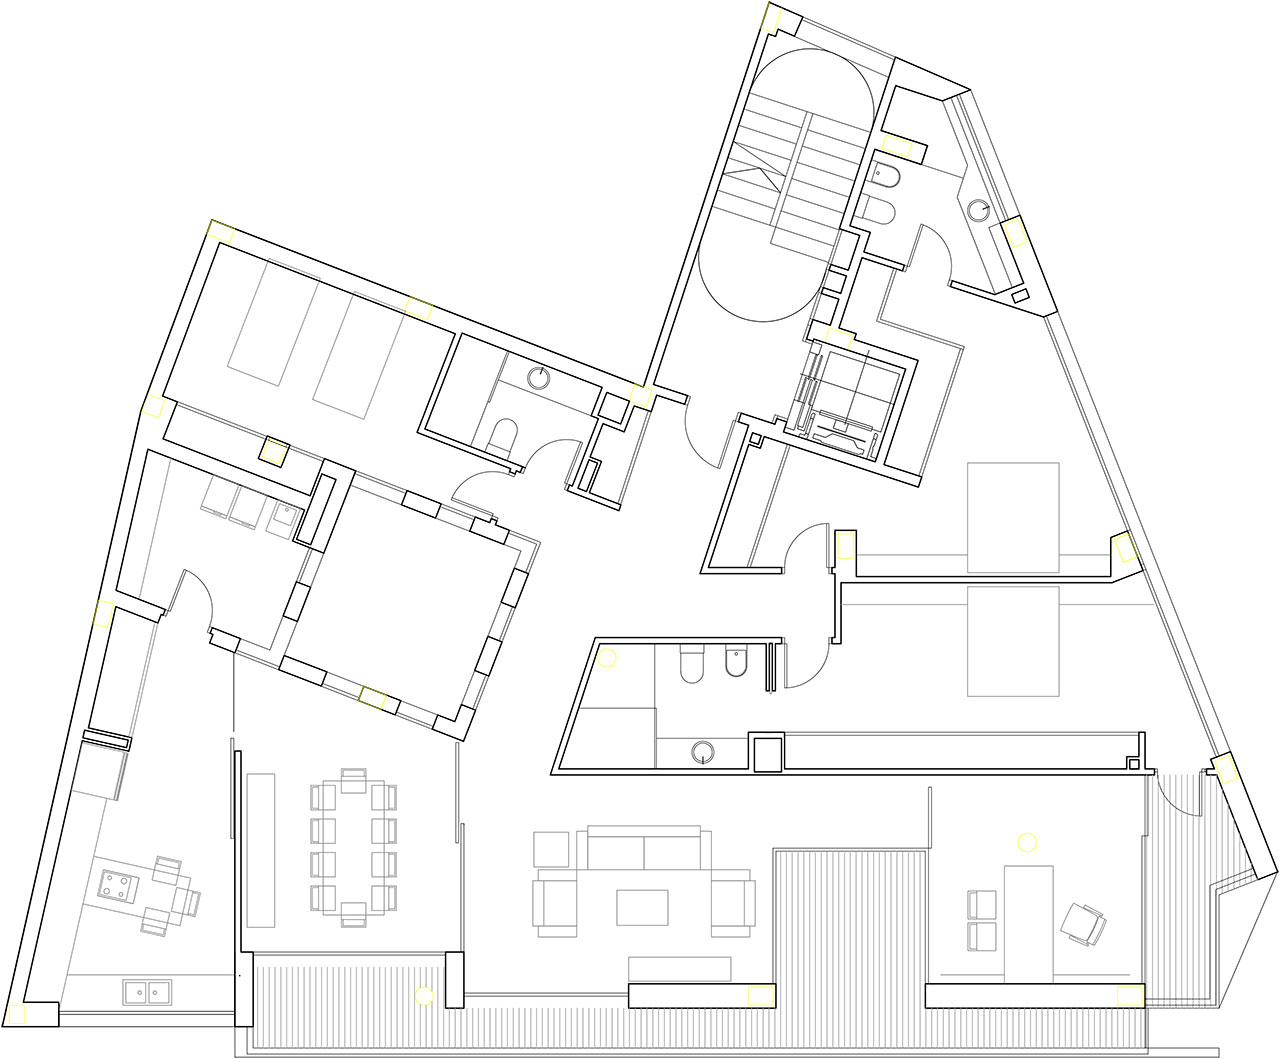 Plano del proyecto de construcción de edificio viviendas con fachadas a dos orientaciones